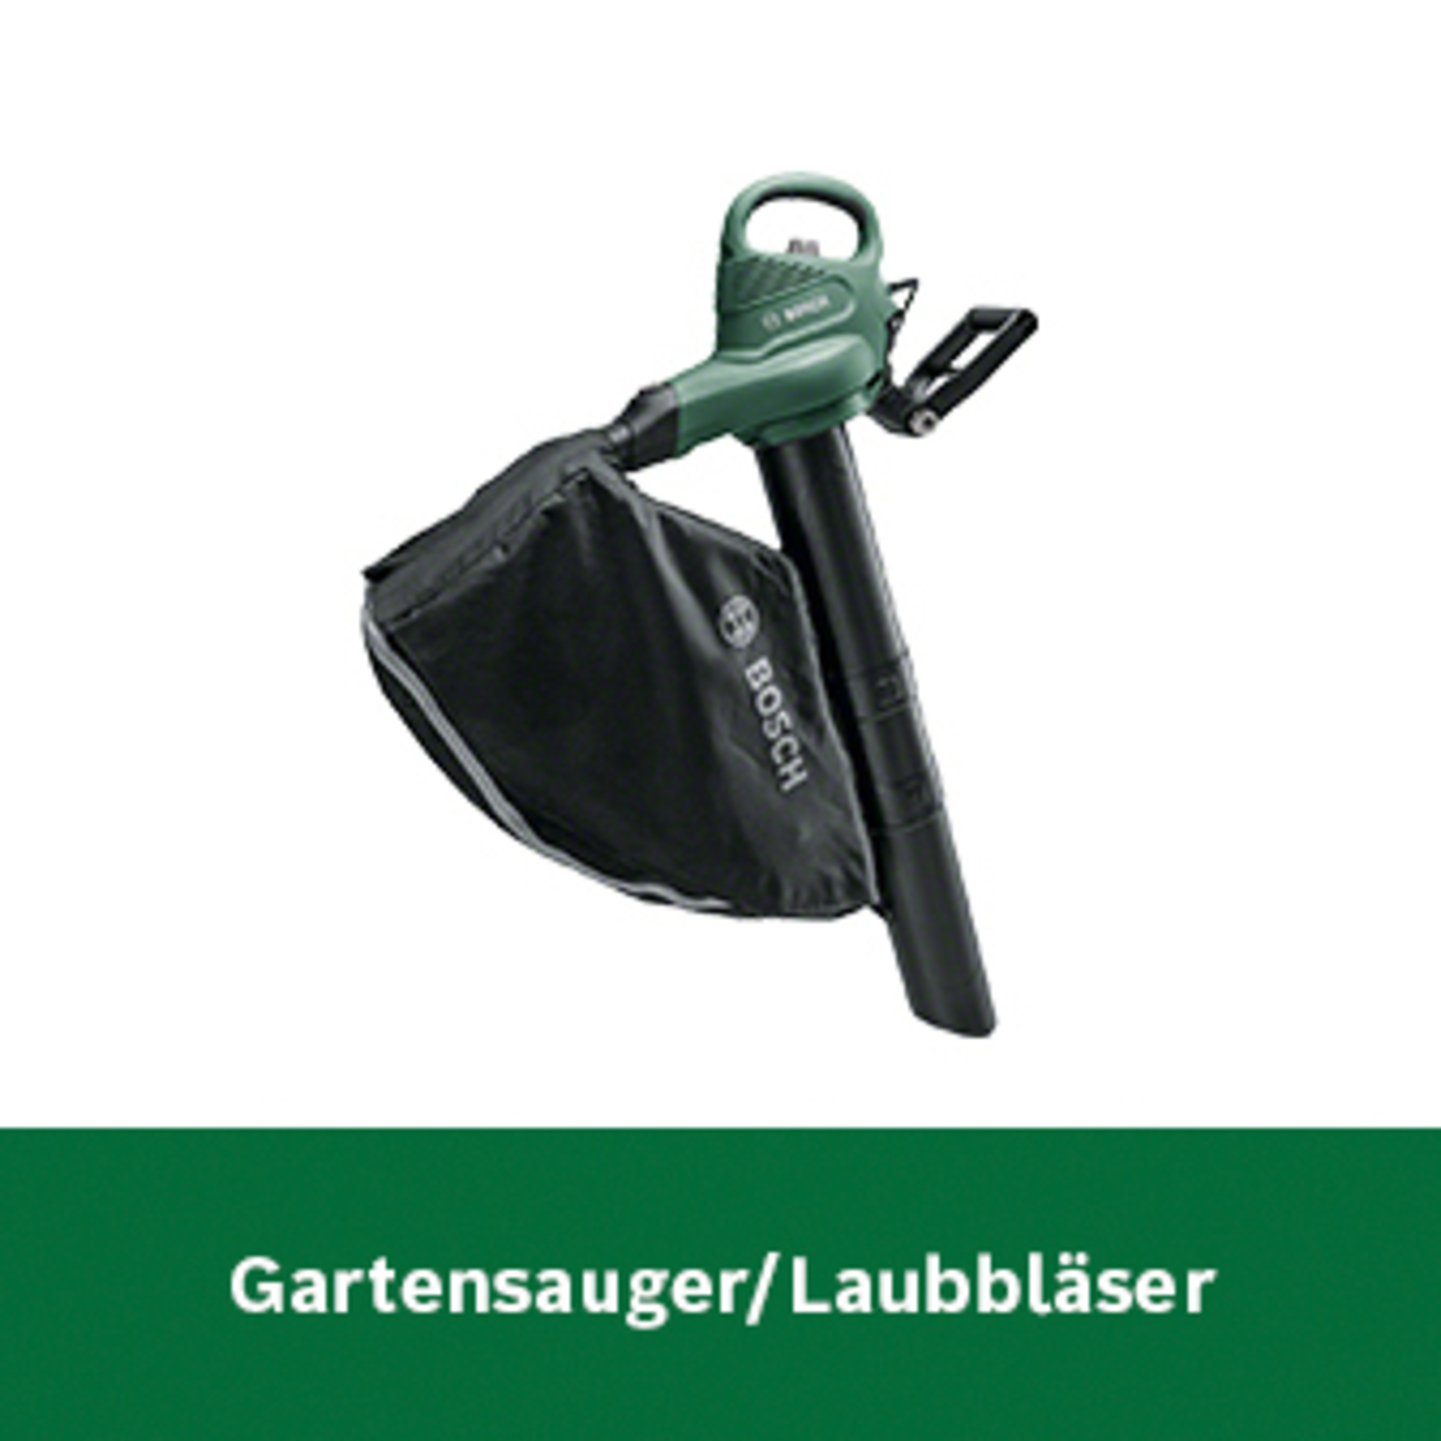 Bosch Gartensauger / Laubbläser